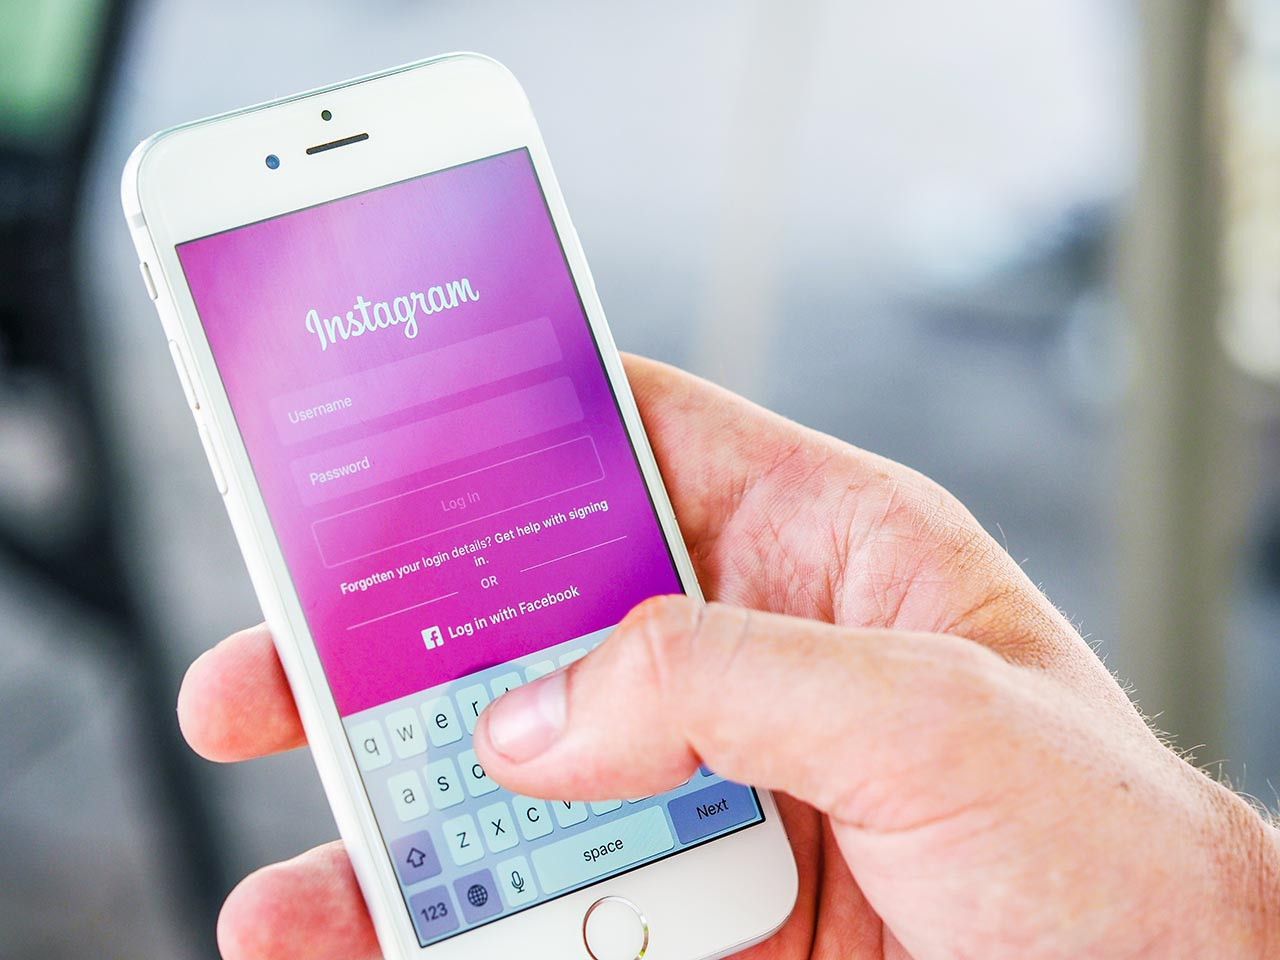 Emniyet Instagram kullanıcılarına kritik uyarı